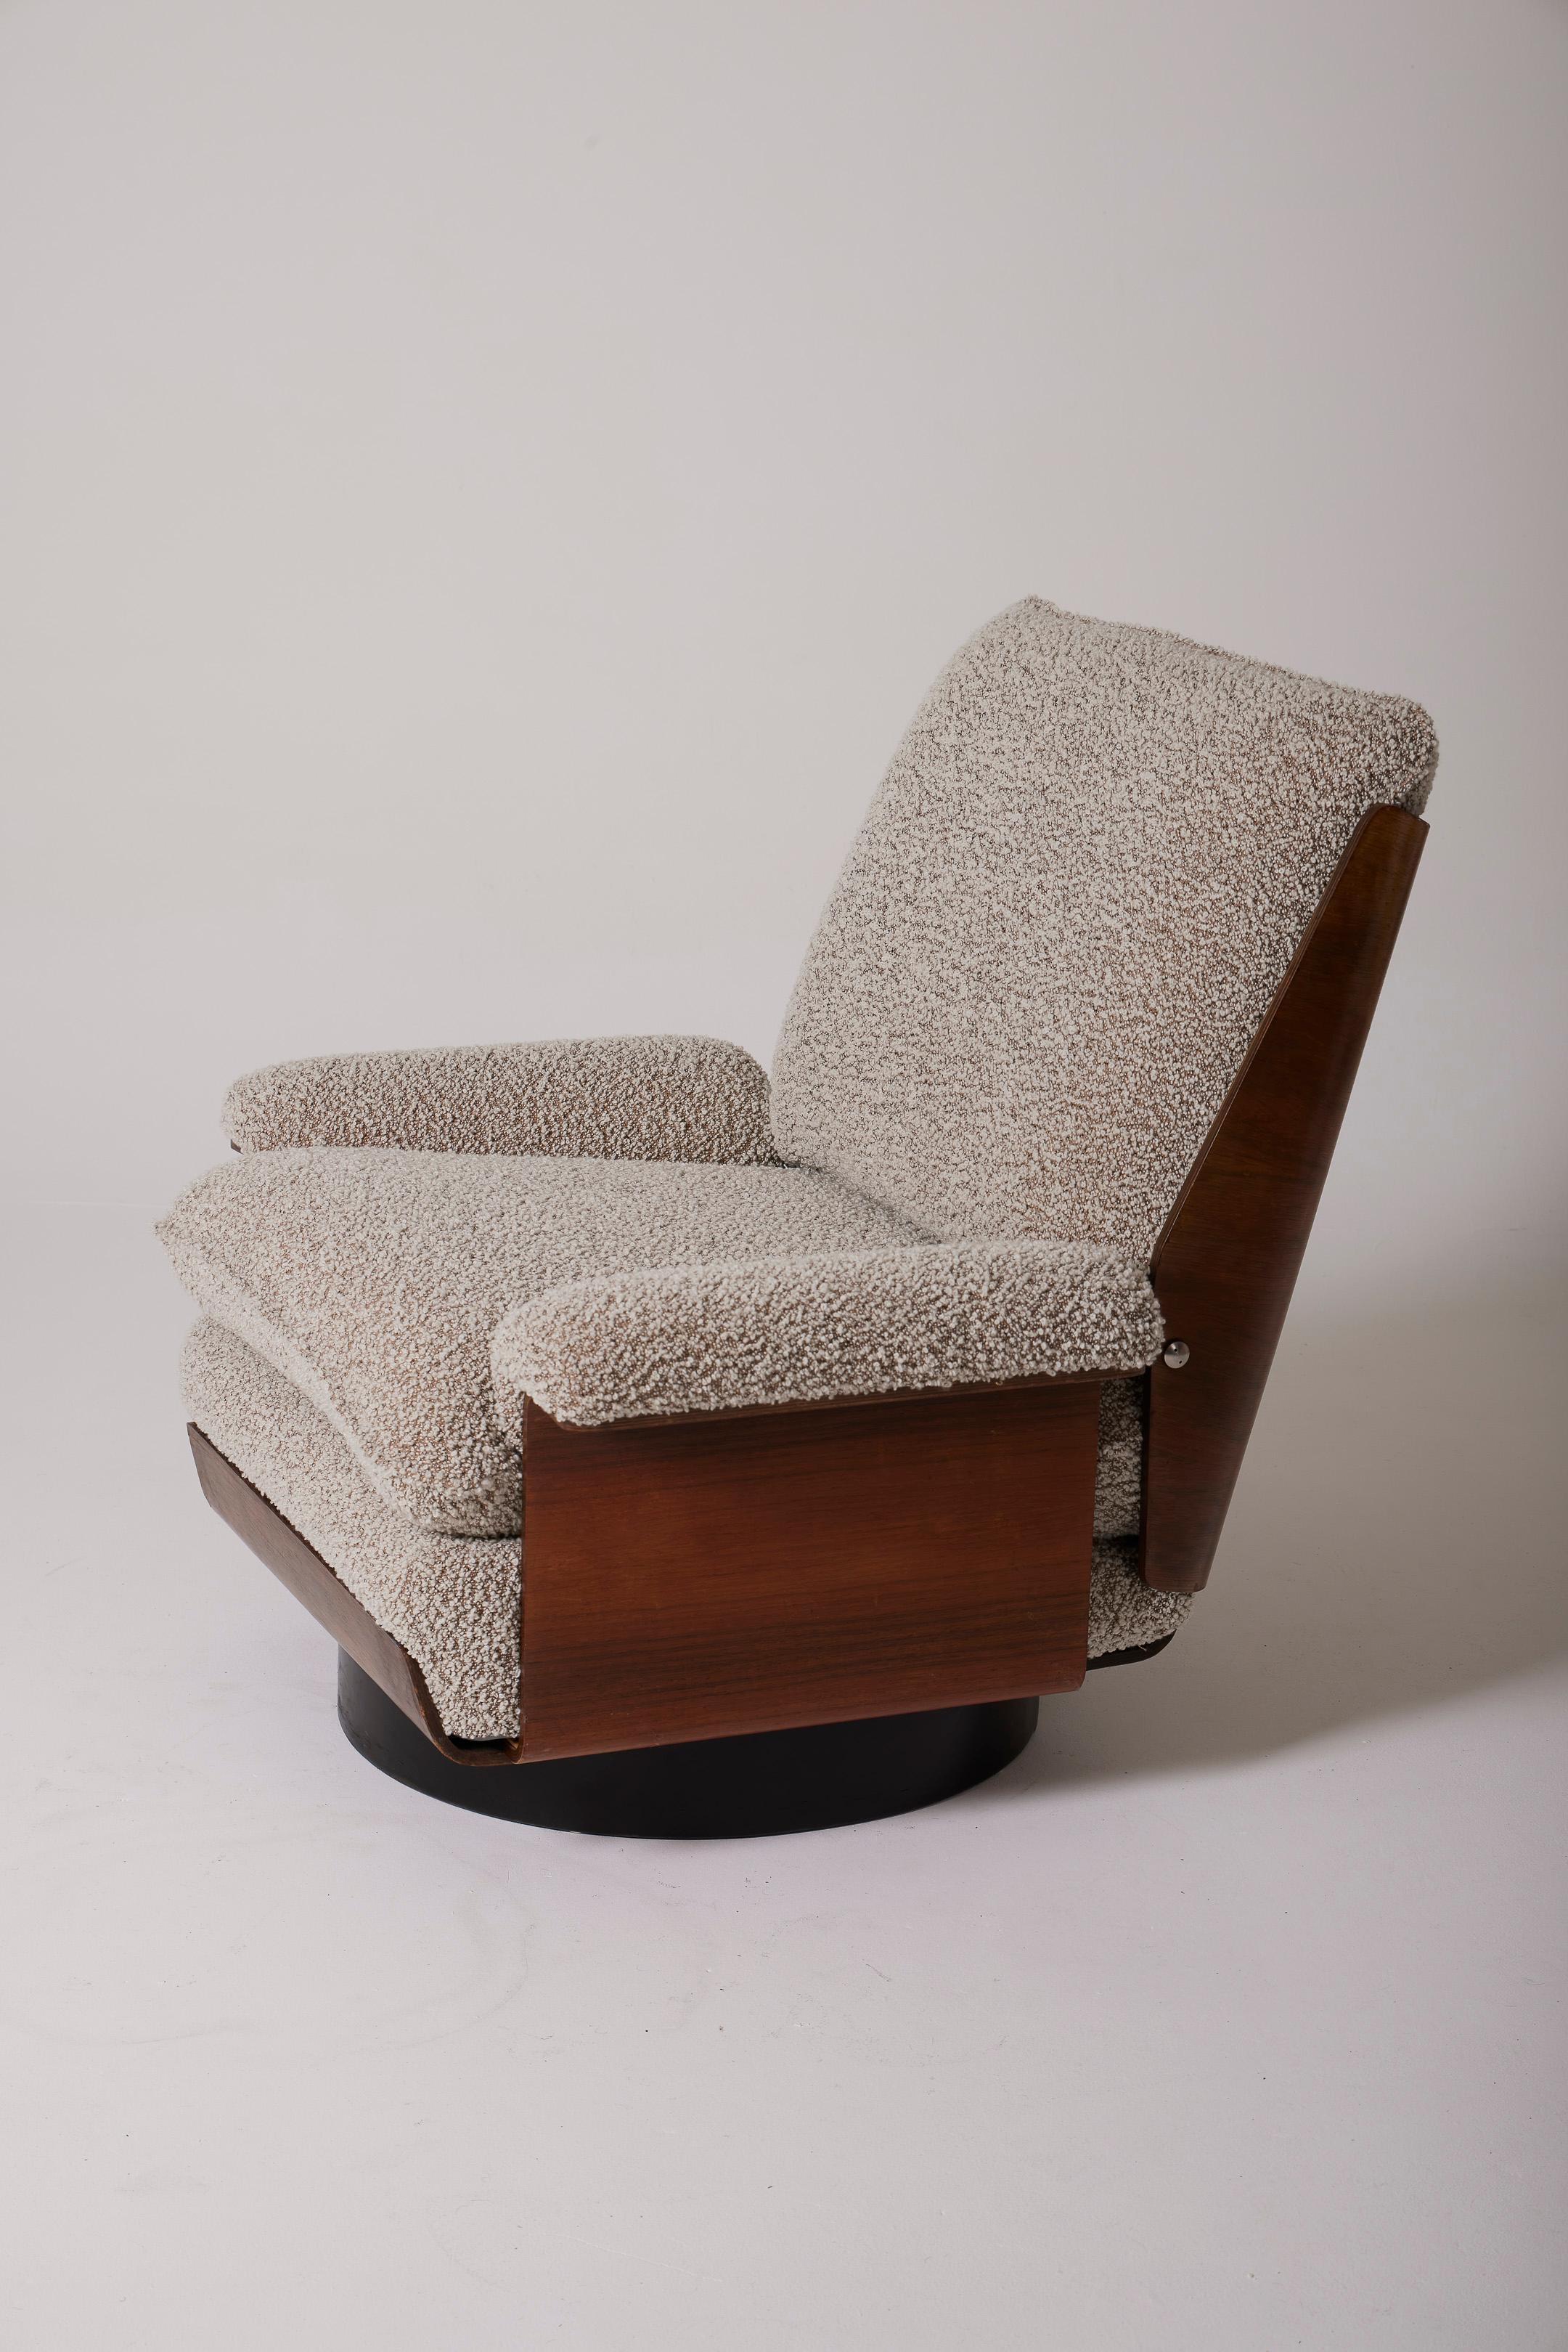 Modèle de chaise Viborg conçu par Bernard Brunier pour Coulon datant des années 1970. La coque est en placage de palissandre de Rio. La base cylindrique est en bois noirci. L'assise, le dossier et les accoudoirs ont été retapissés avec un tissu